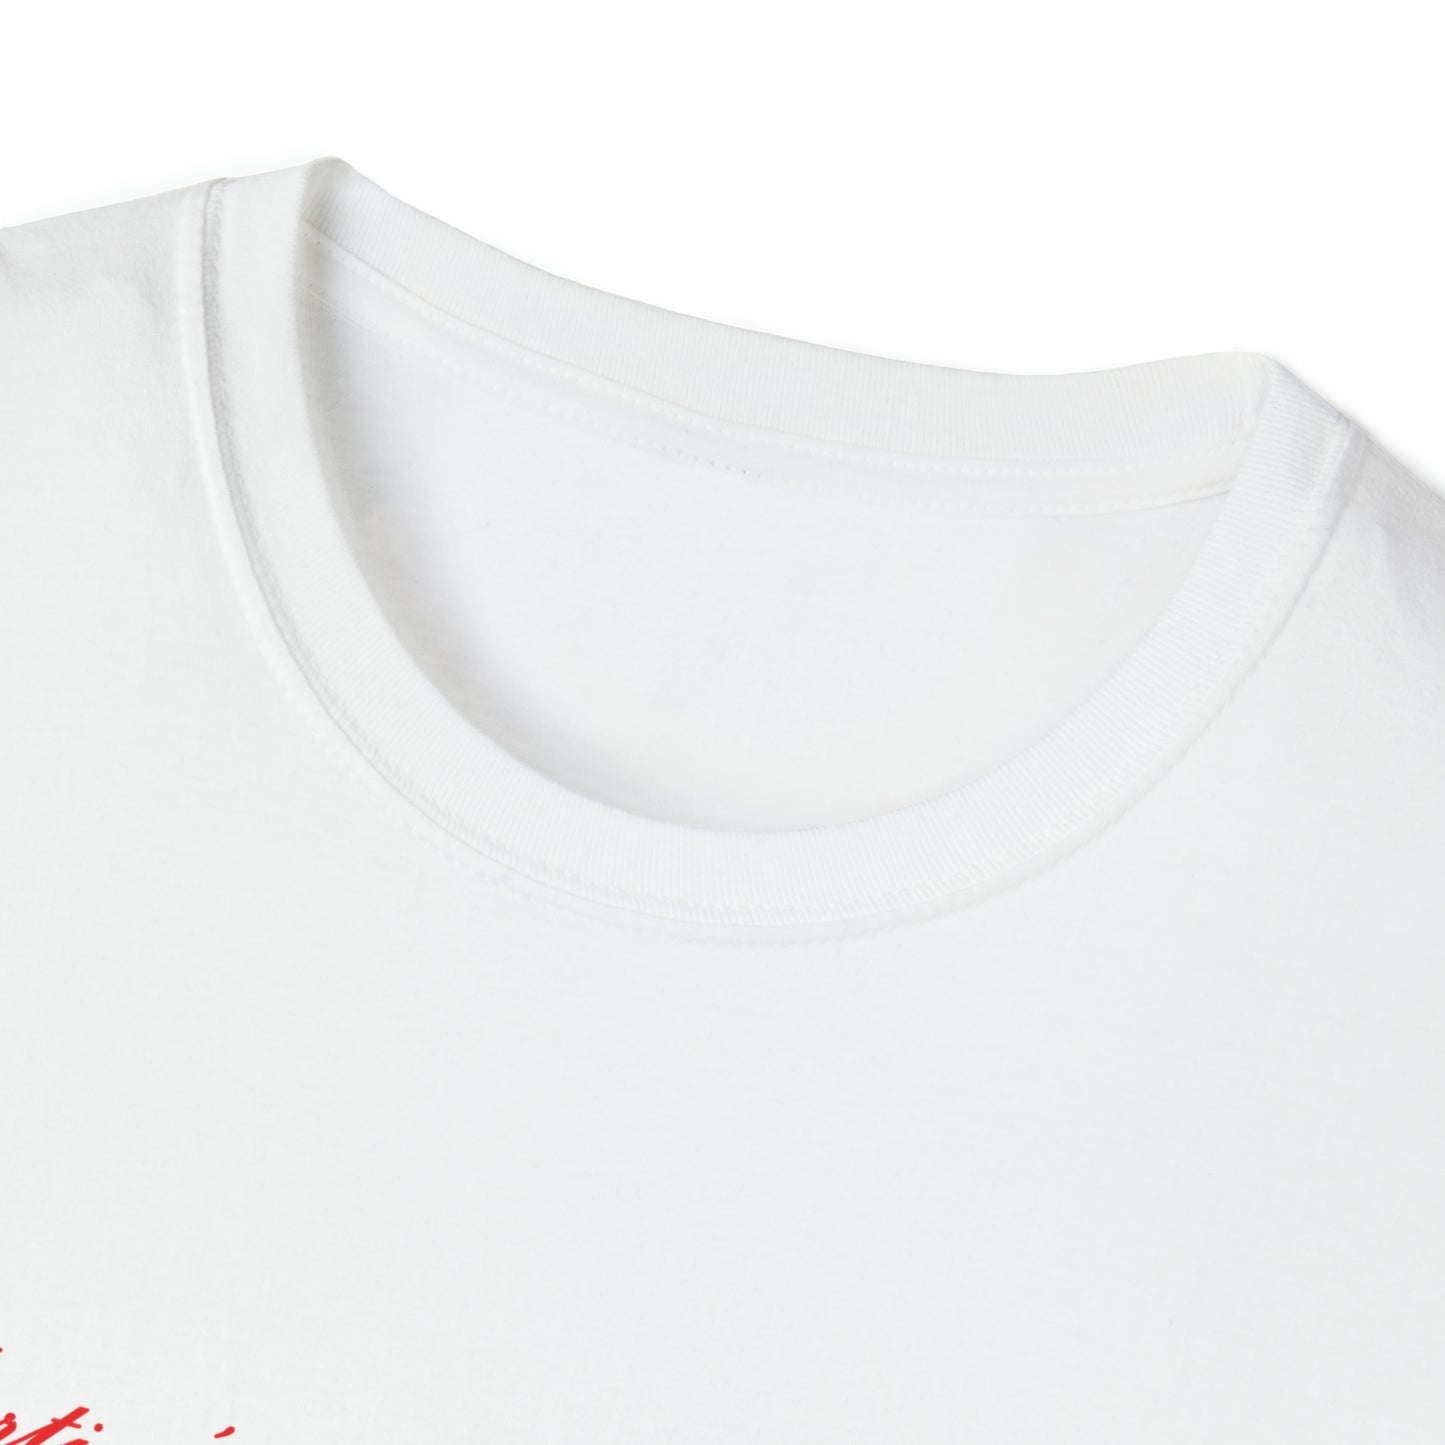 JSVFest Camiseta unisex de estilo suave